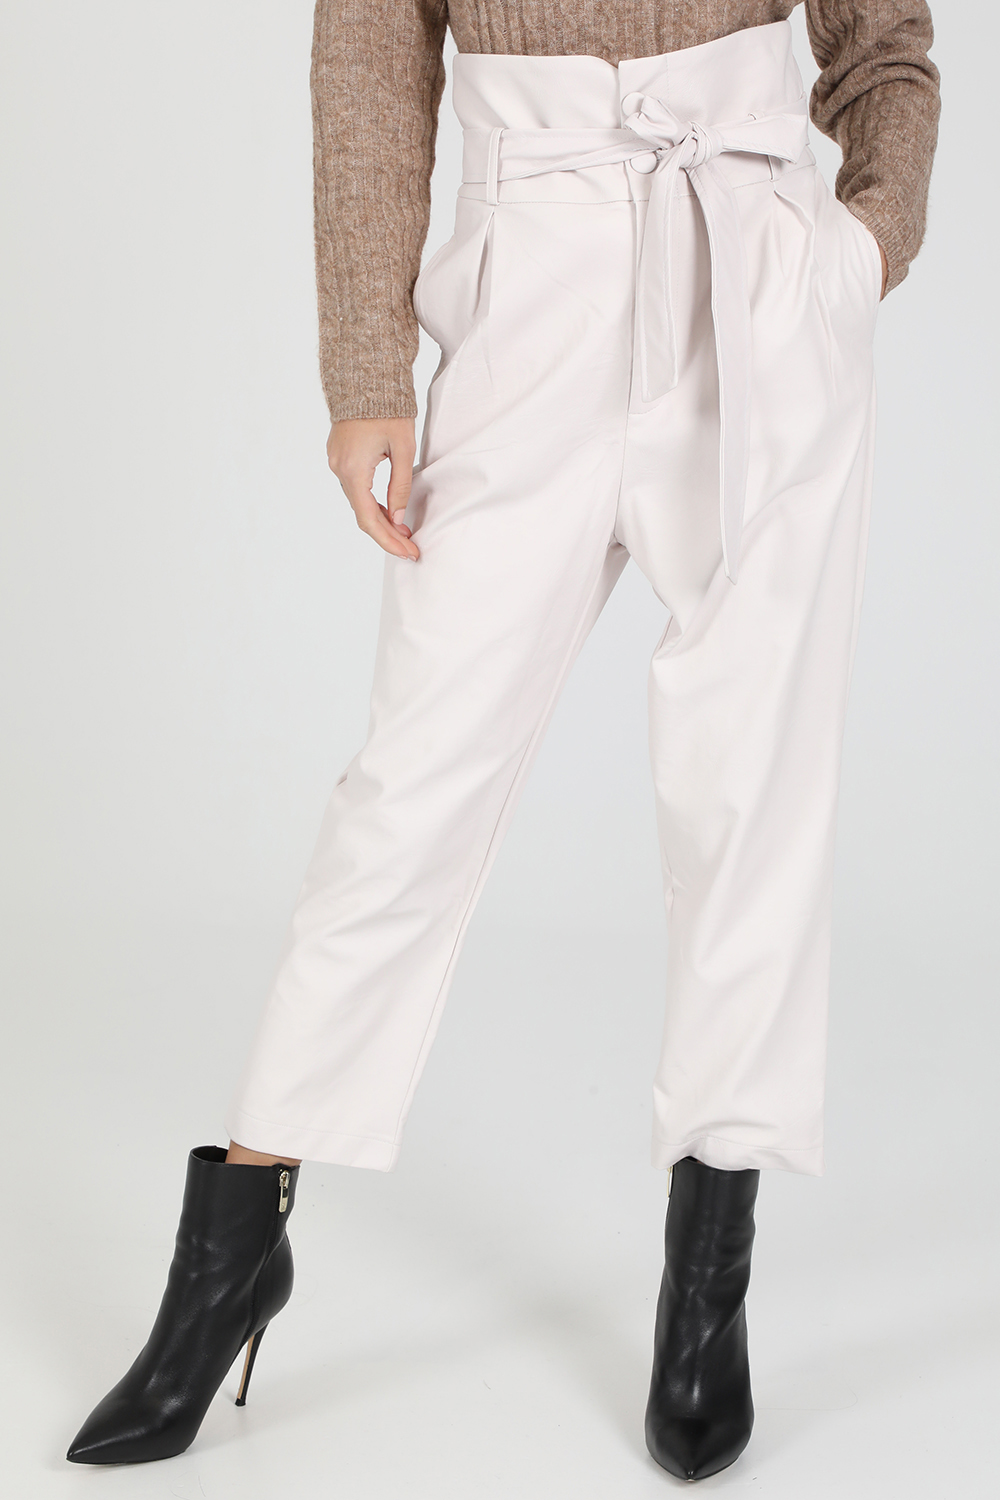 Γυναικεία/Ρούχα/Παντελόνια/Cropped LA DOLLS - Γυναικείο παντελόνι LA DOLLS ORIGINAL λευκό